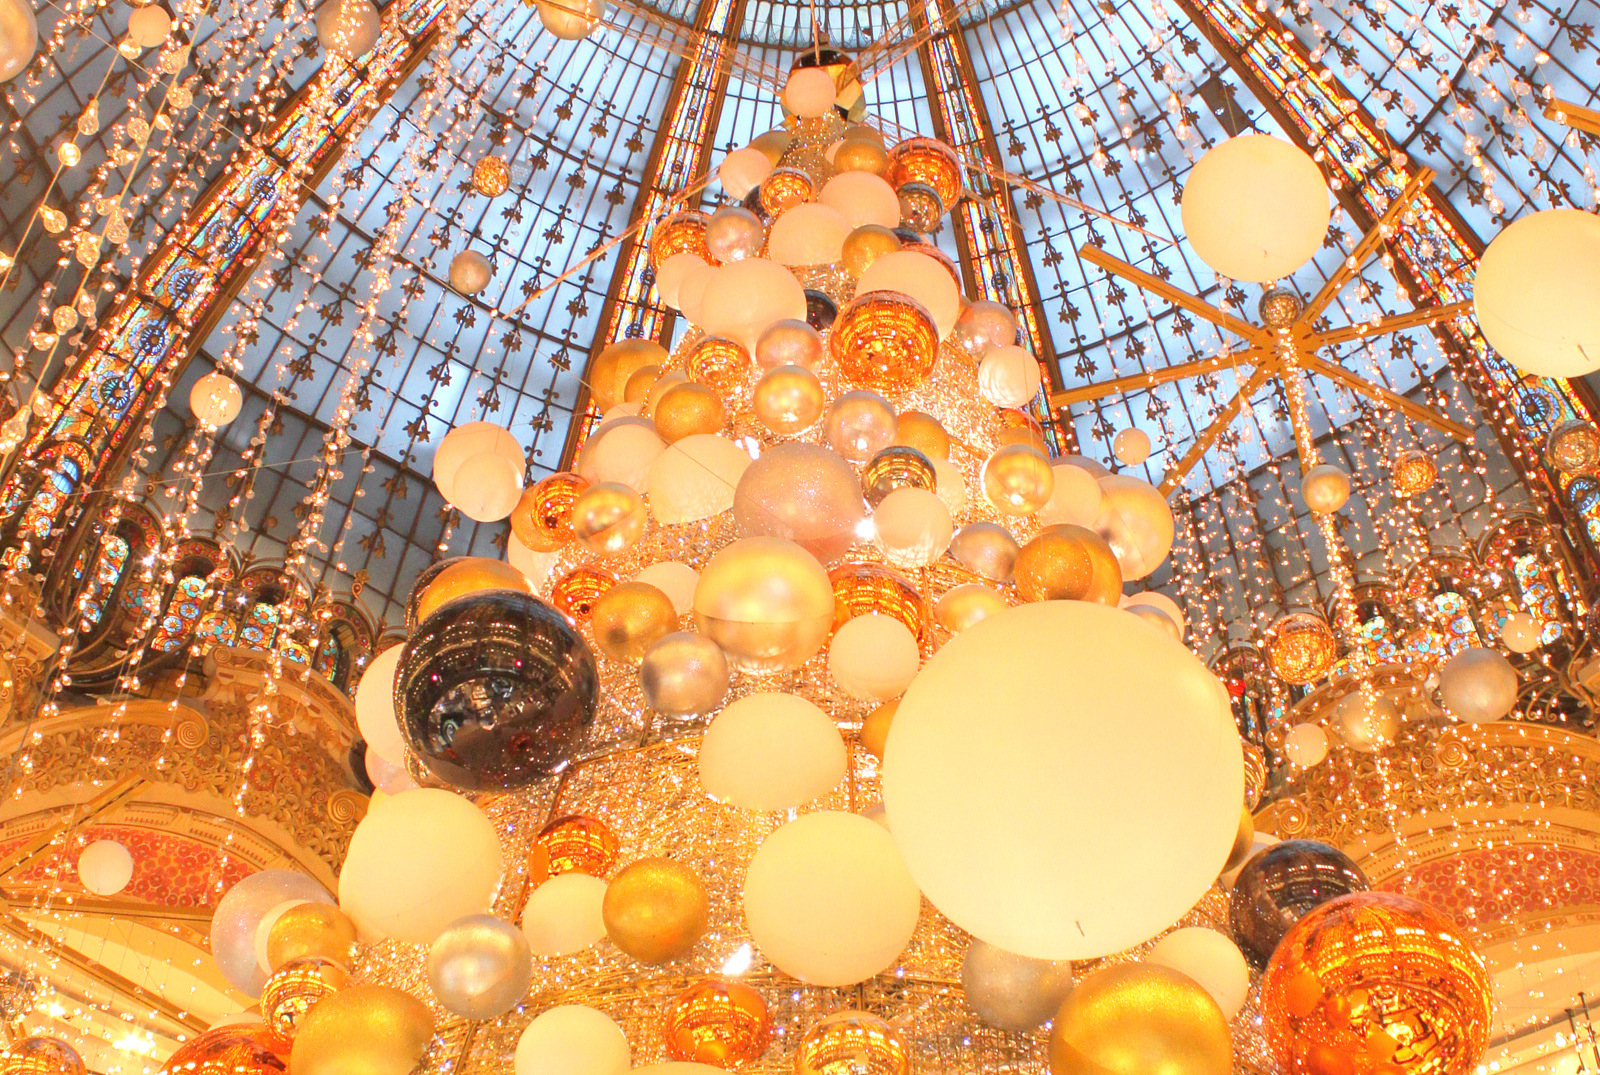 Noël des grands magasins parisiens